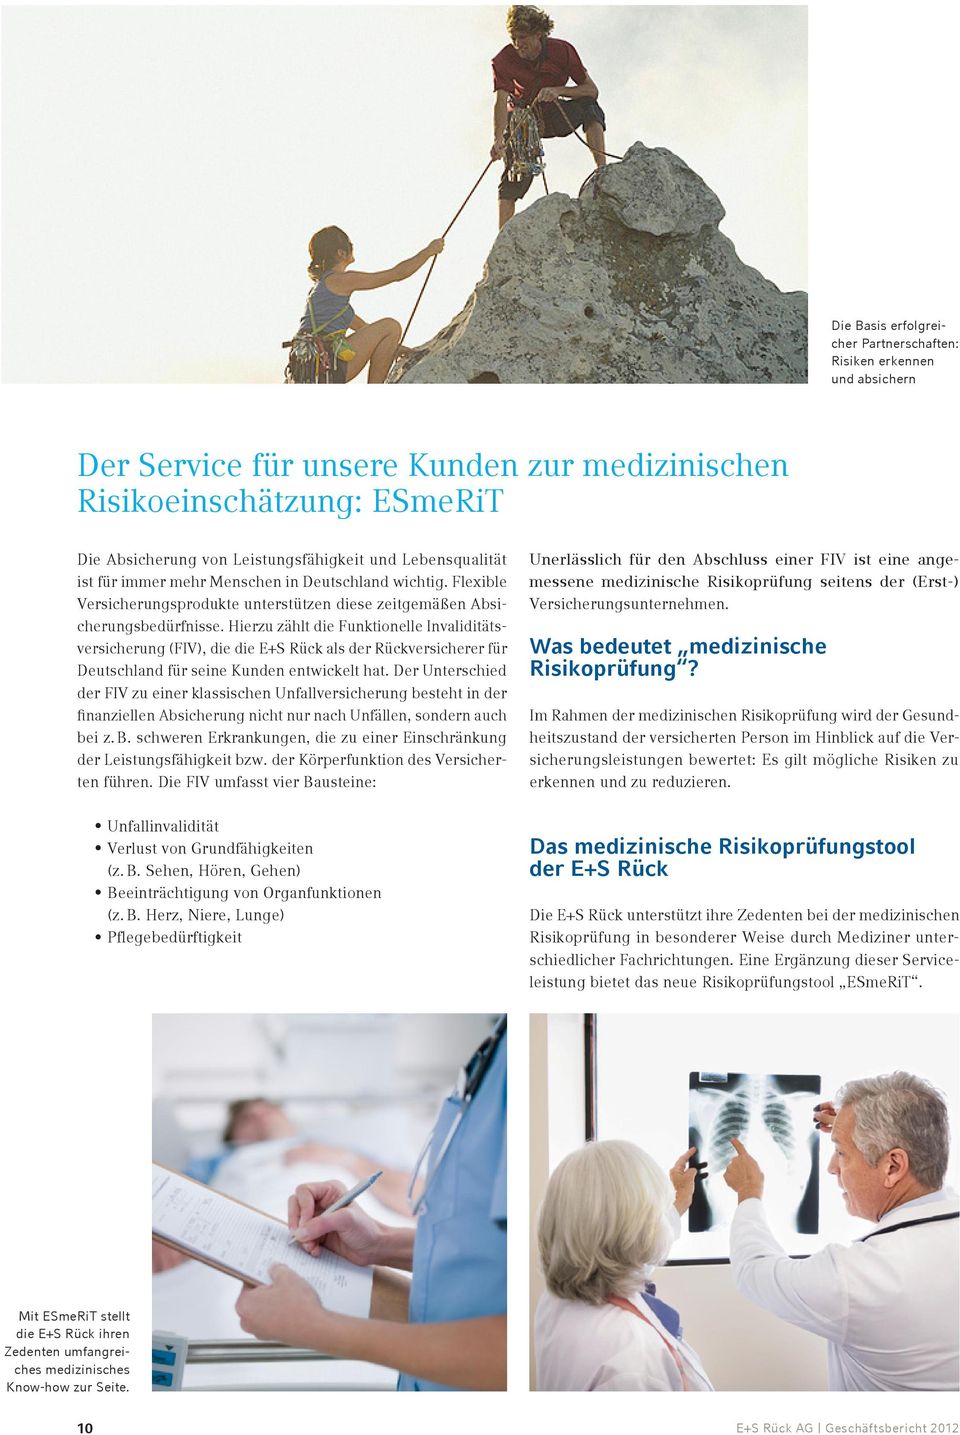 Hierzu zählt die Funktionelle Invaliditätsversicherung (FIV), die die E+S Rück als der Rückversicherer für Deutschland für seine Kunden entwickelt hat.